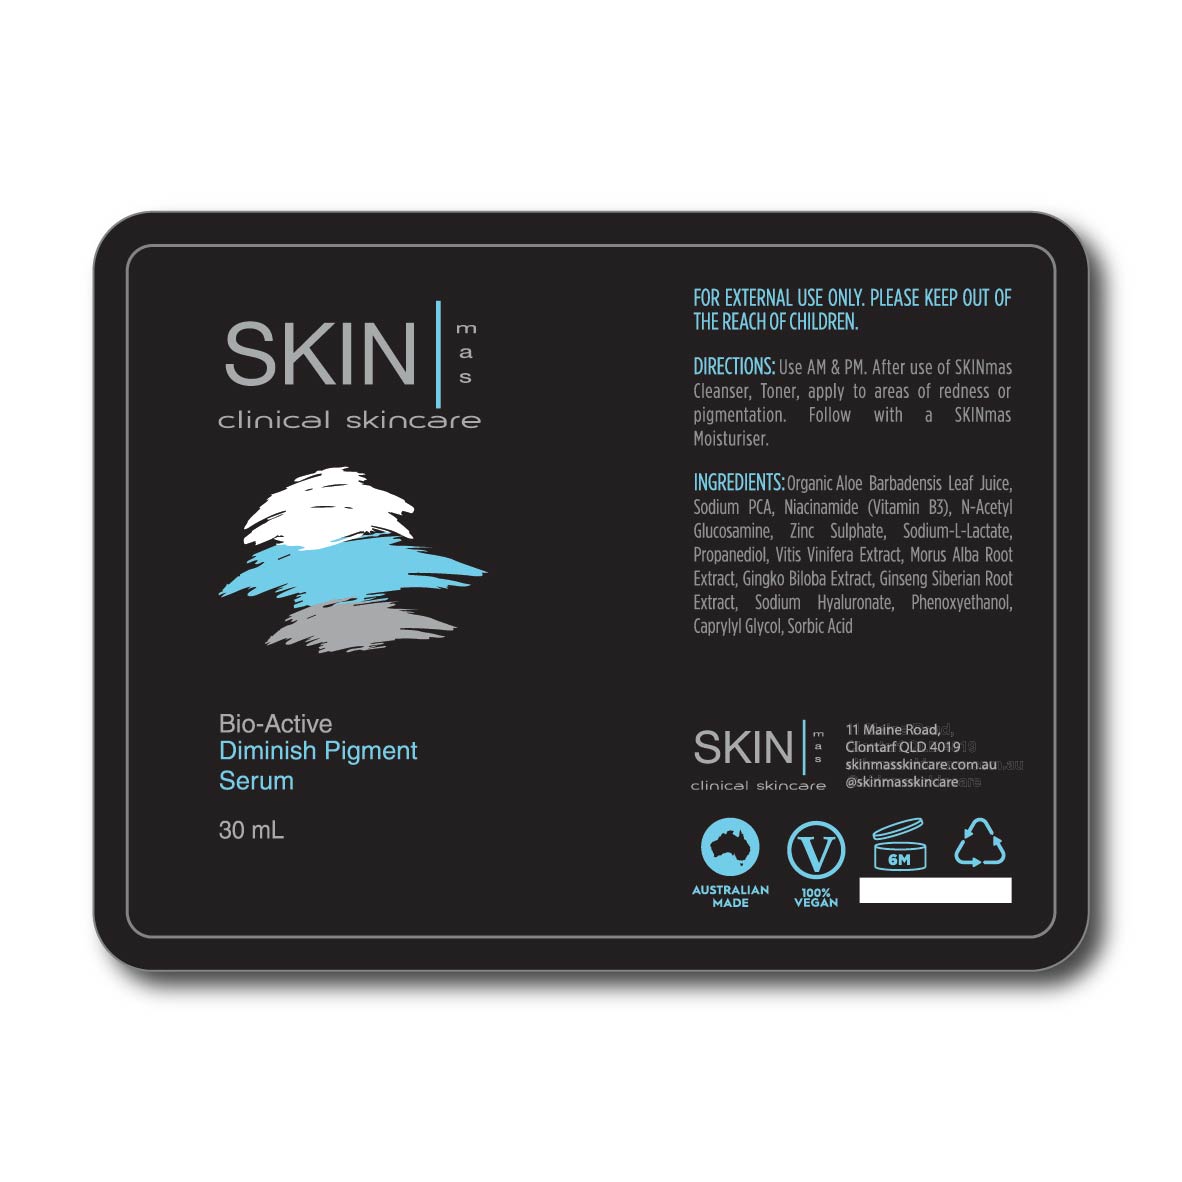 SM Bio-Active Diminish Pigment Serum Label